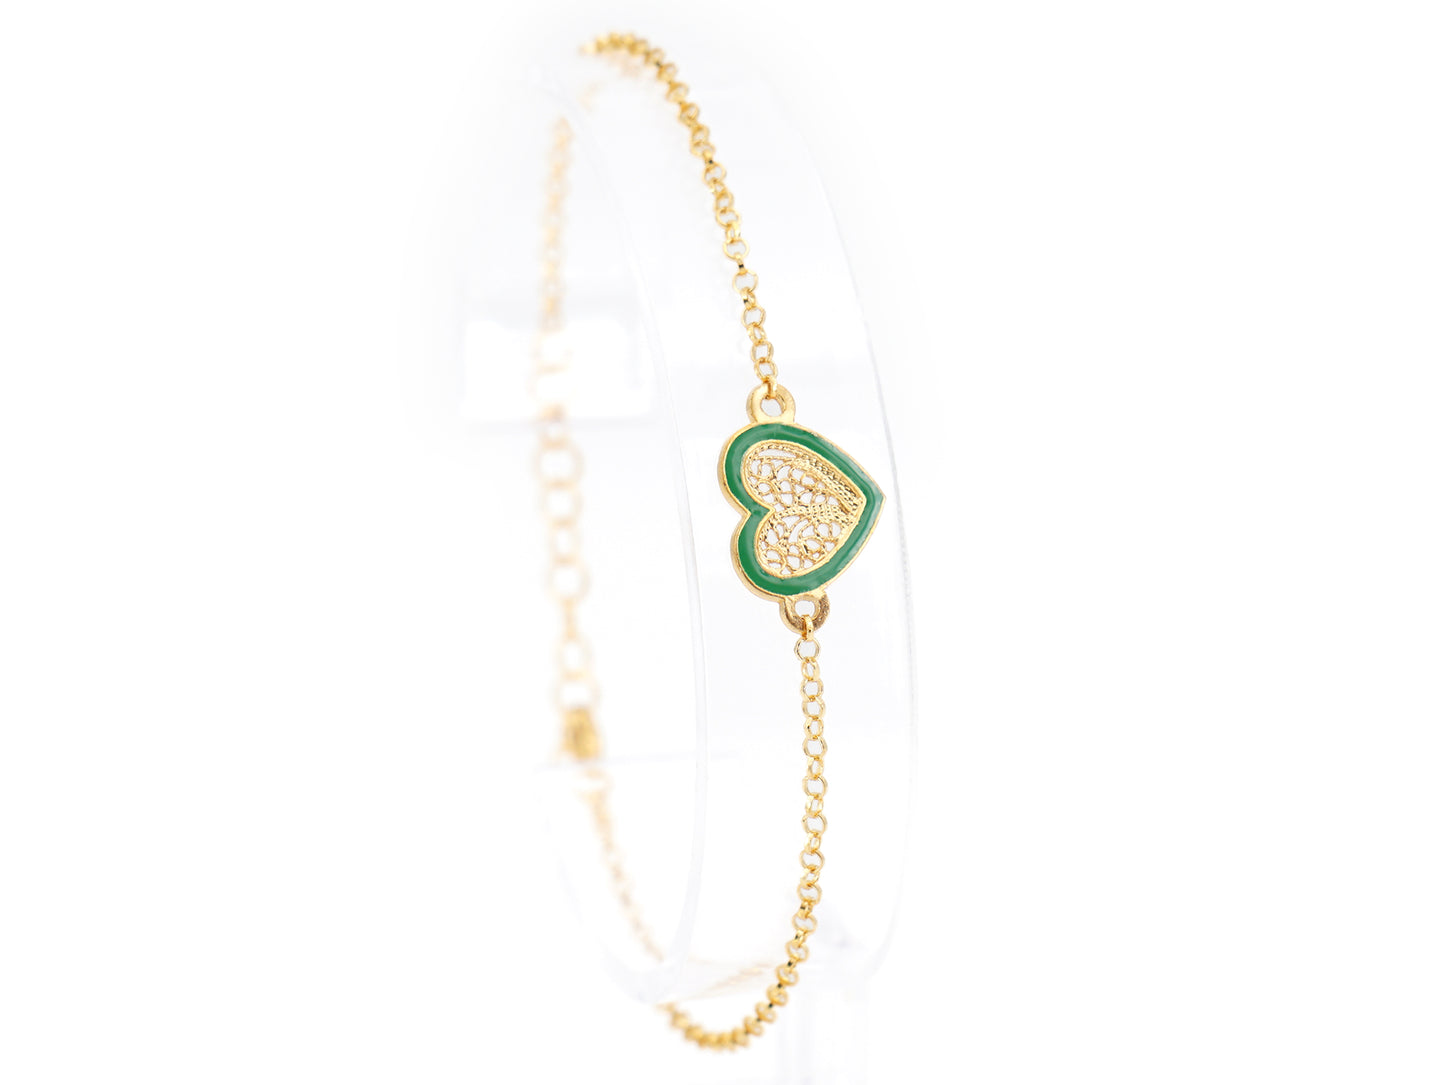 Pulseira Coração Pequeno Esmalte Verde, Filigrana Portuguesa, Prata de Lei 925 Dourada - Pulseira em exposição